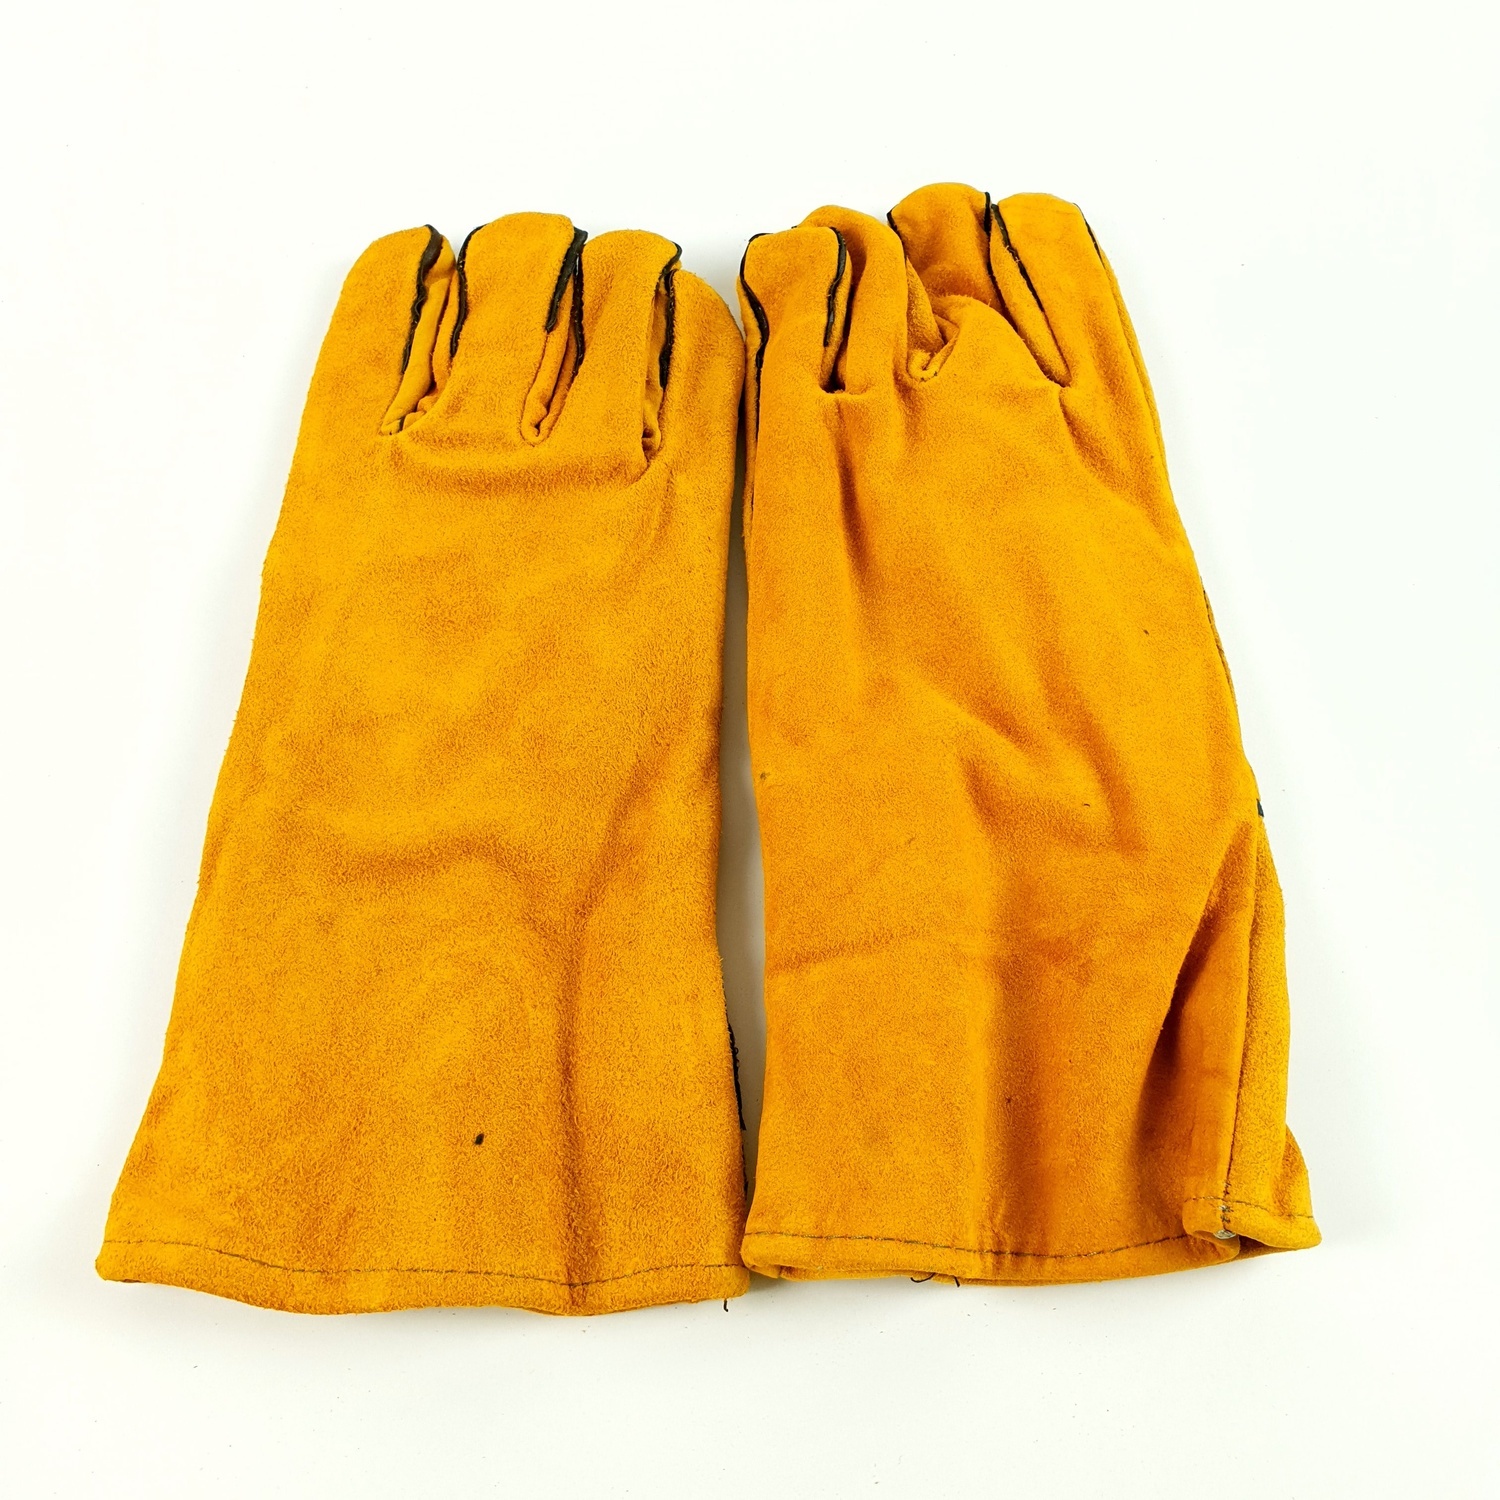 ถุงมือเชื่อม รุ่น JR-WGY 14 นิ้ว สีเหลือง 